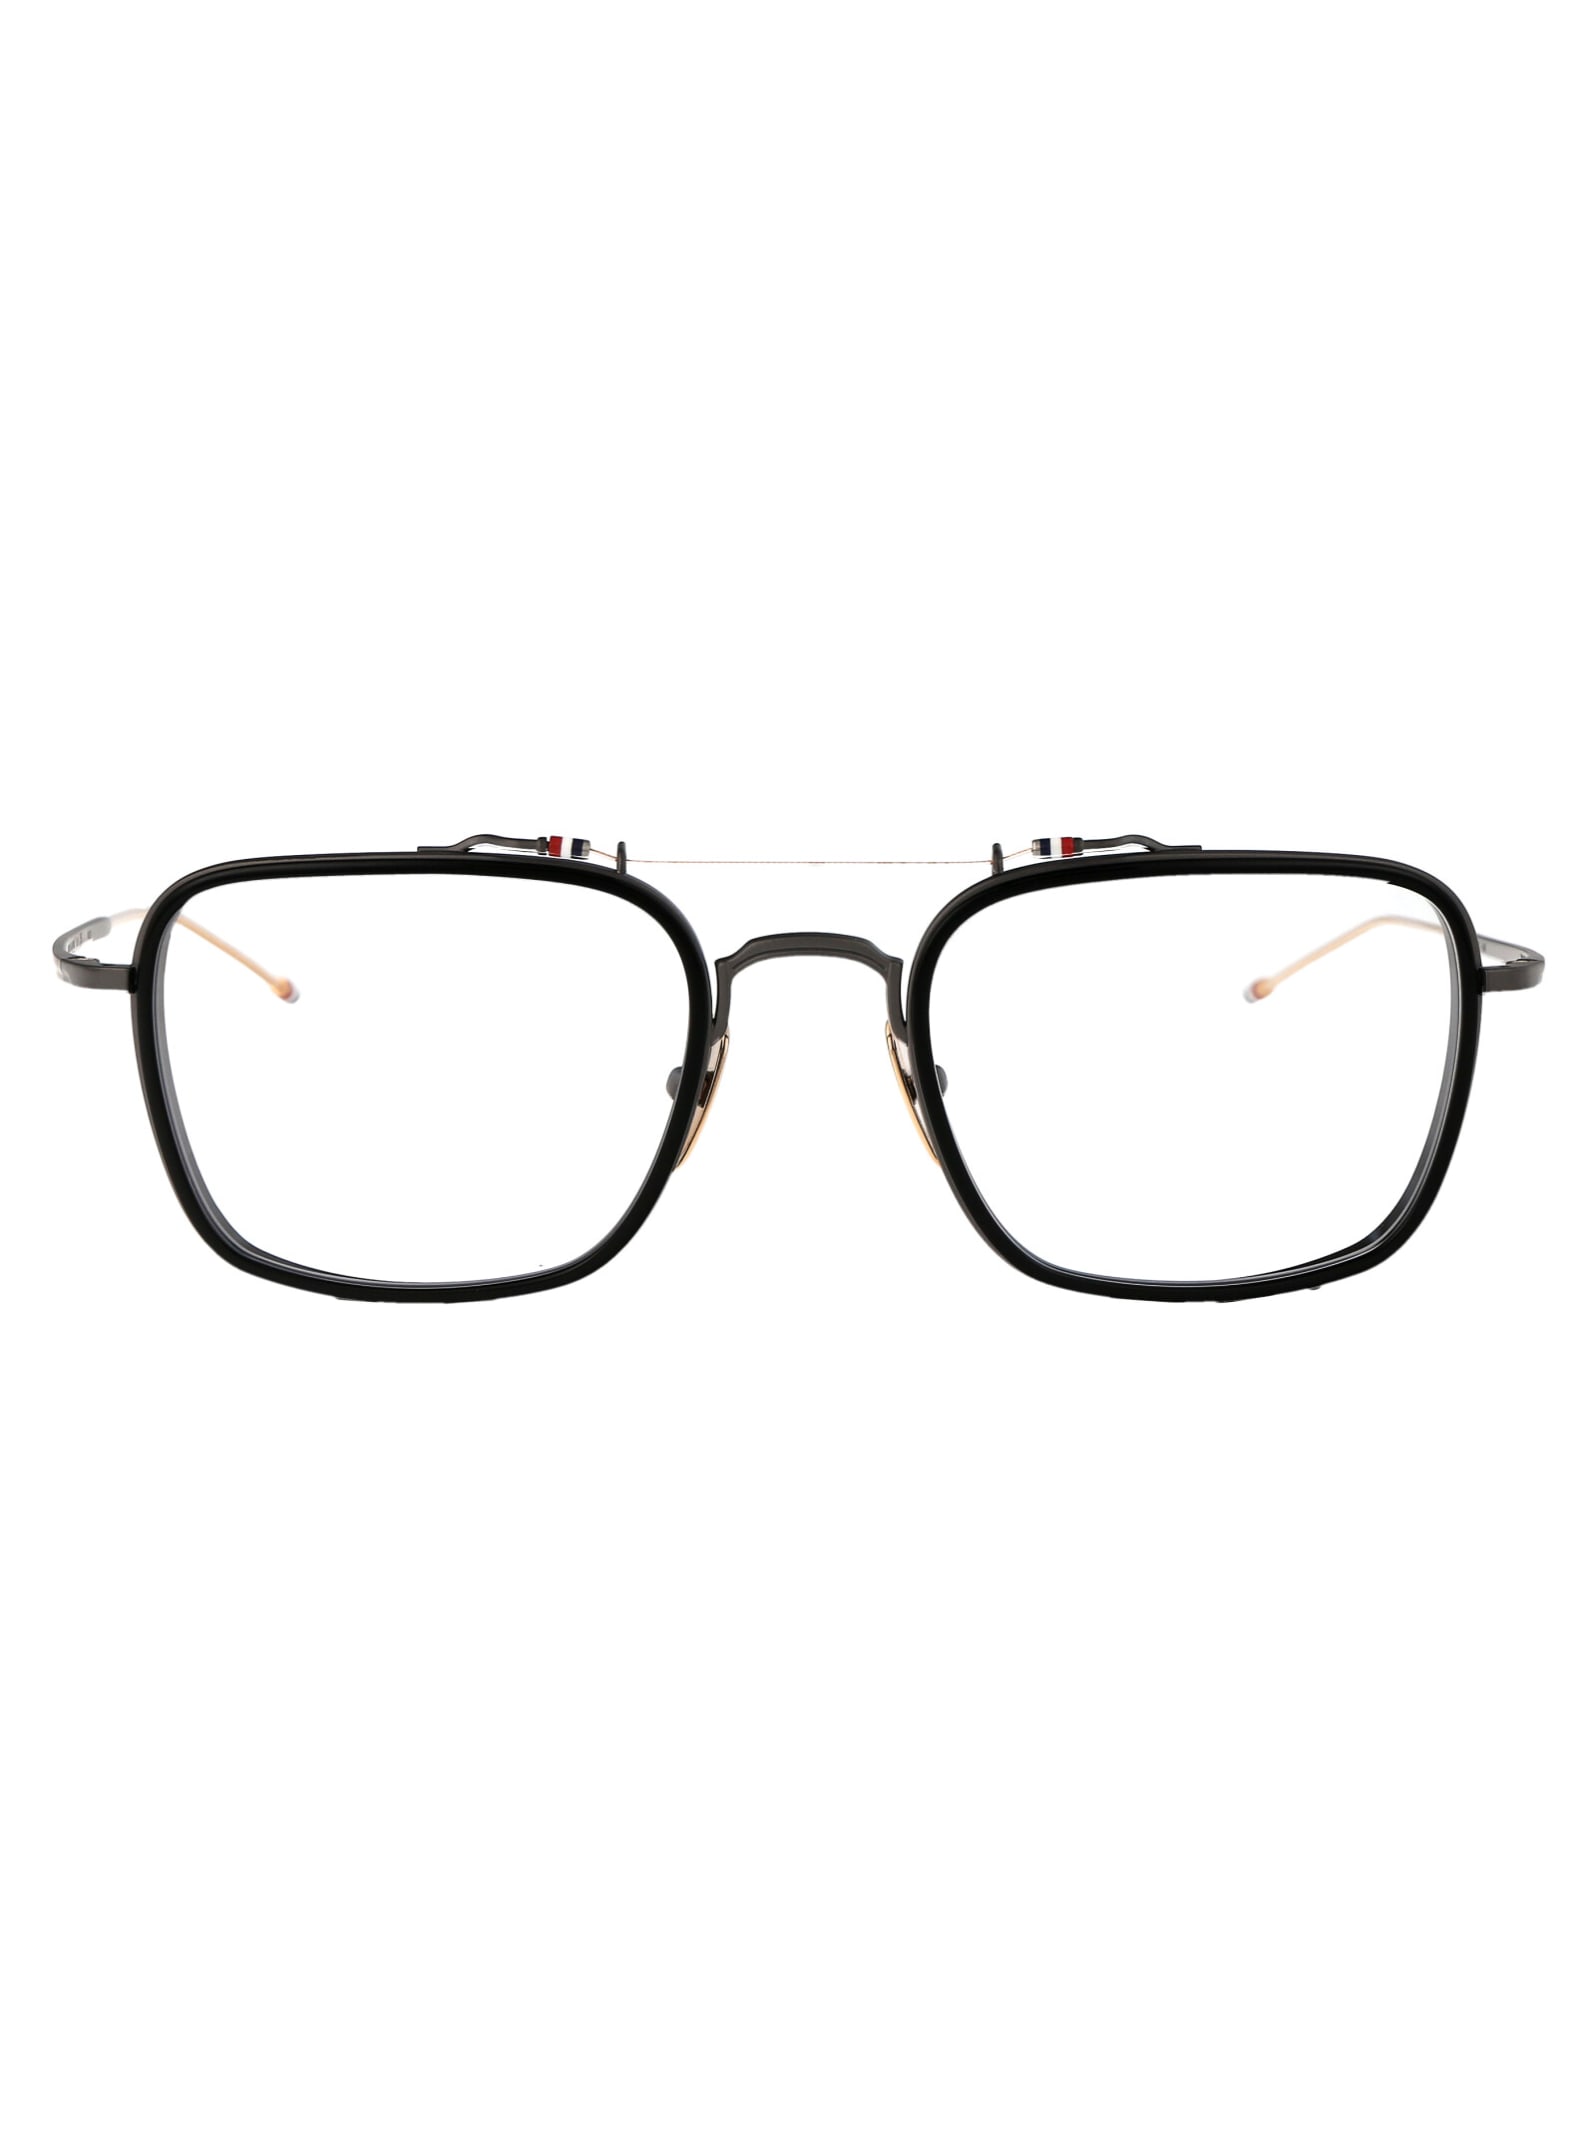 Ueo816a-g0003-001-53 Glasses